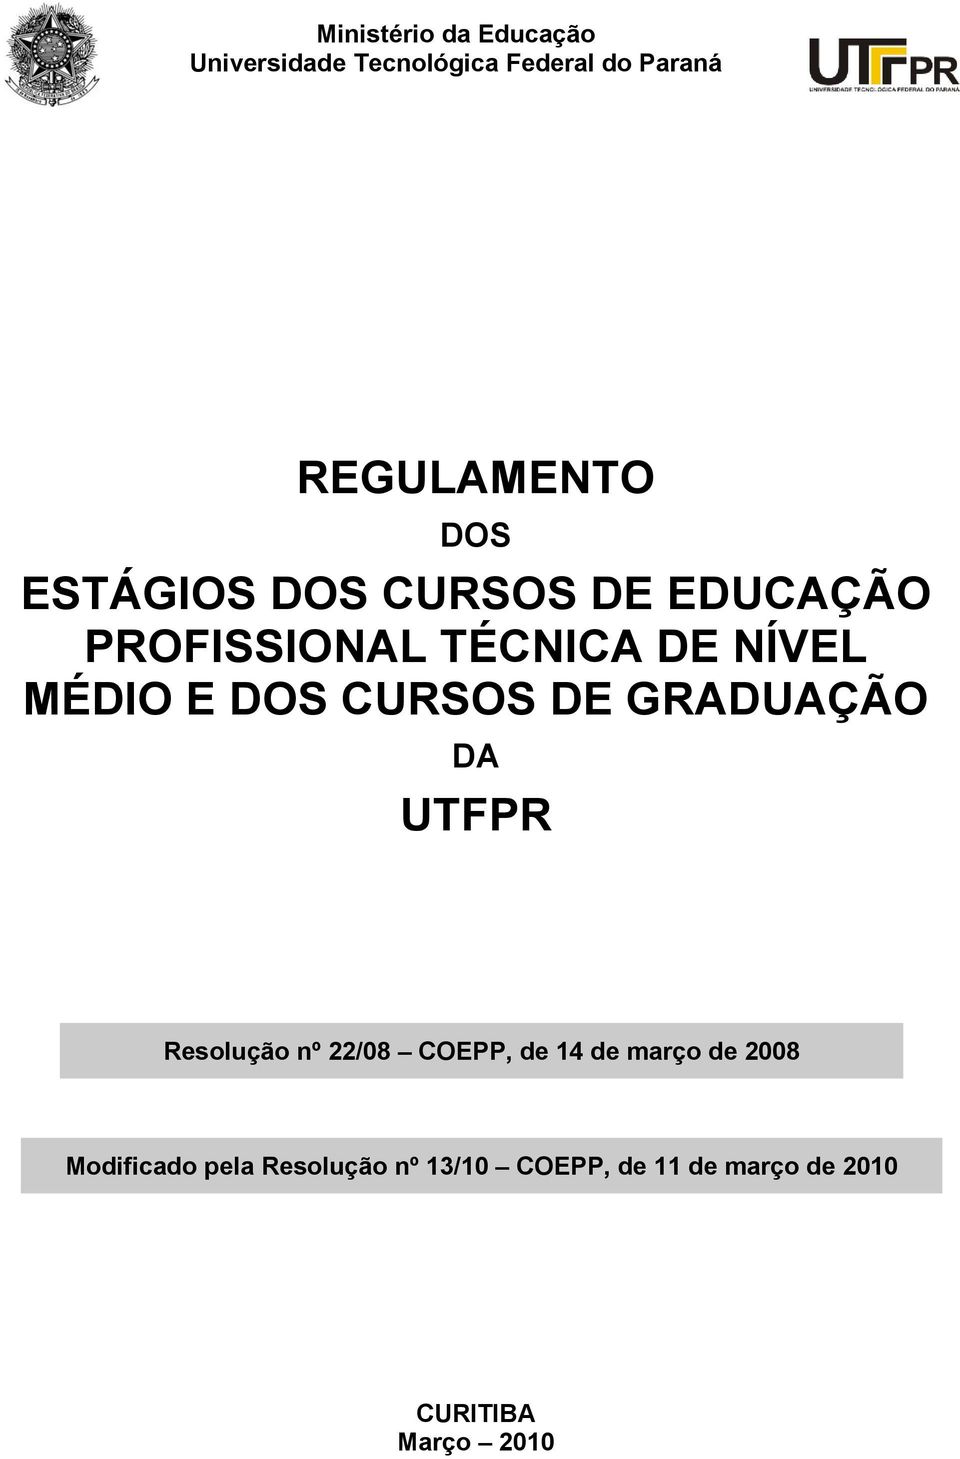 CURSOS DE GRADUAÇÃO DA UTFPR Resolução nº 22/08 COEPP, de 14 de março de 2008